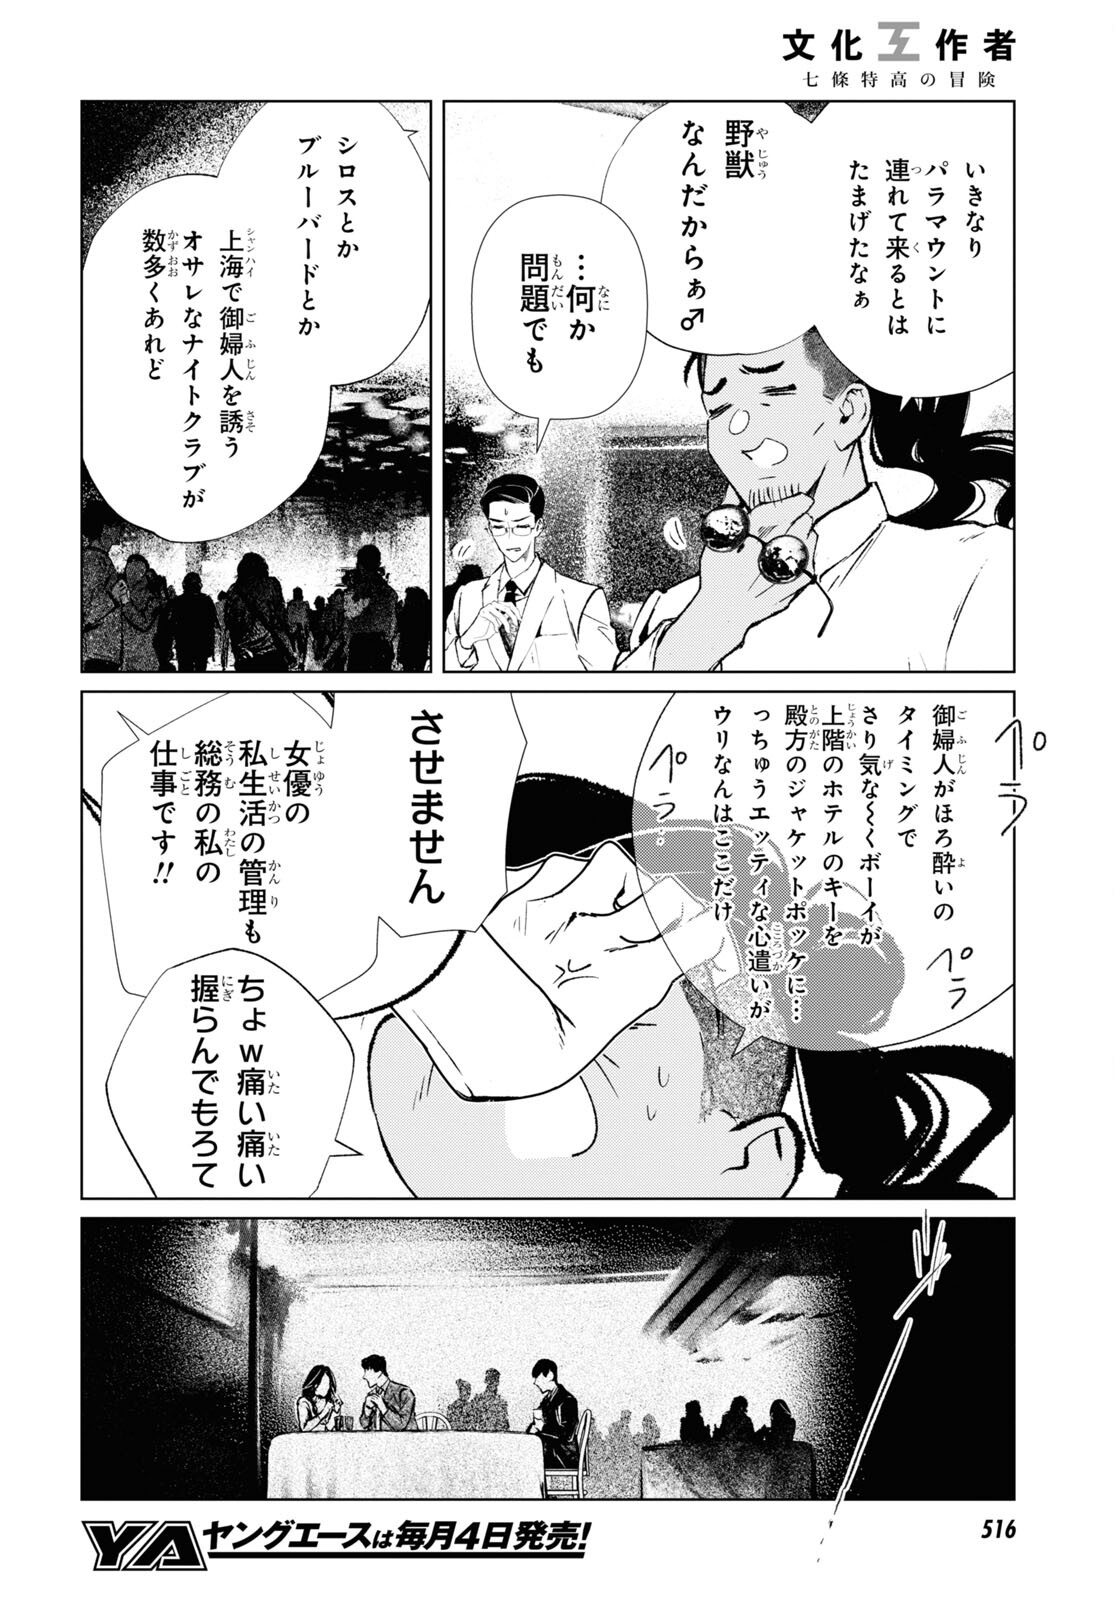 文化工作者 七條特高の冒険 第6話 - Page 6